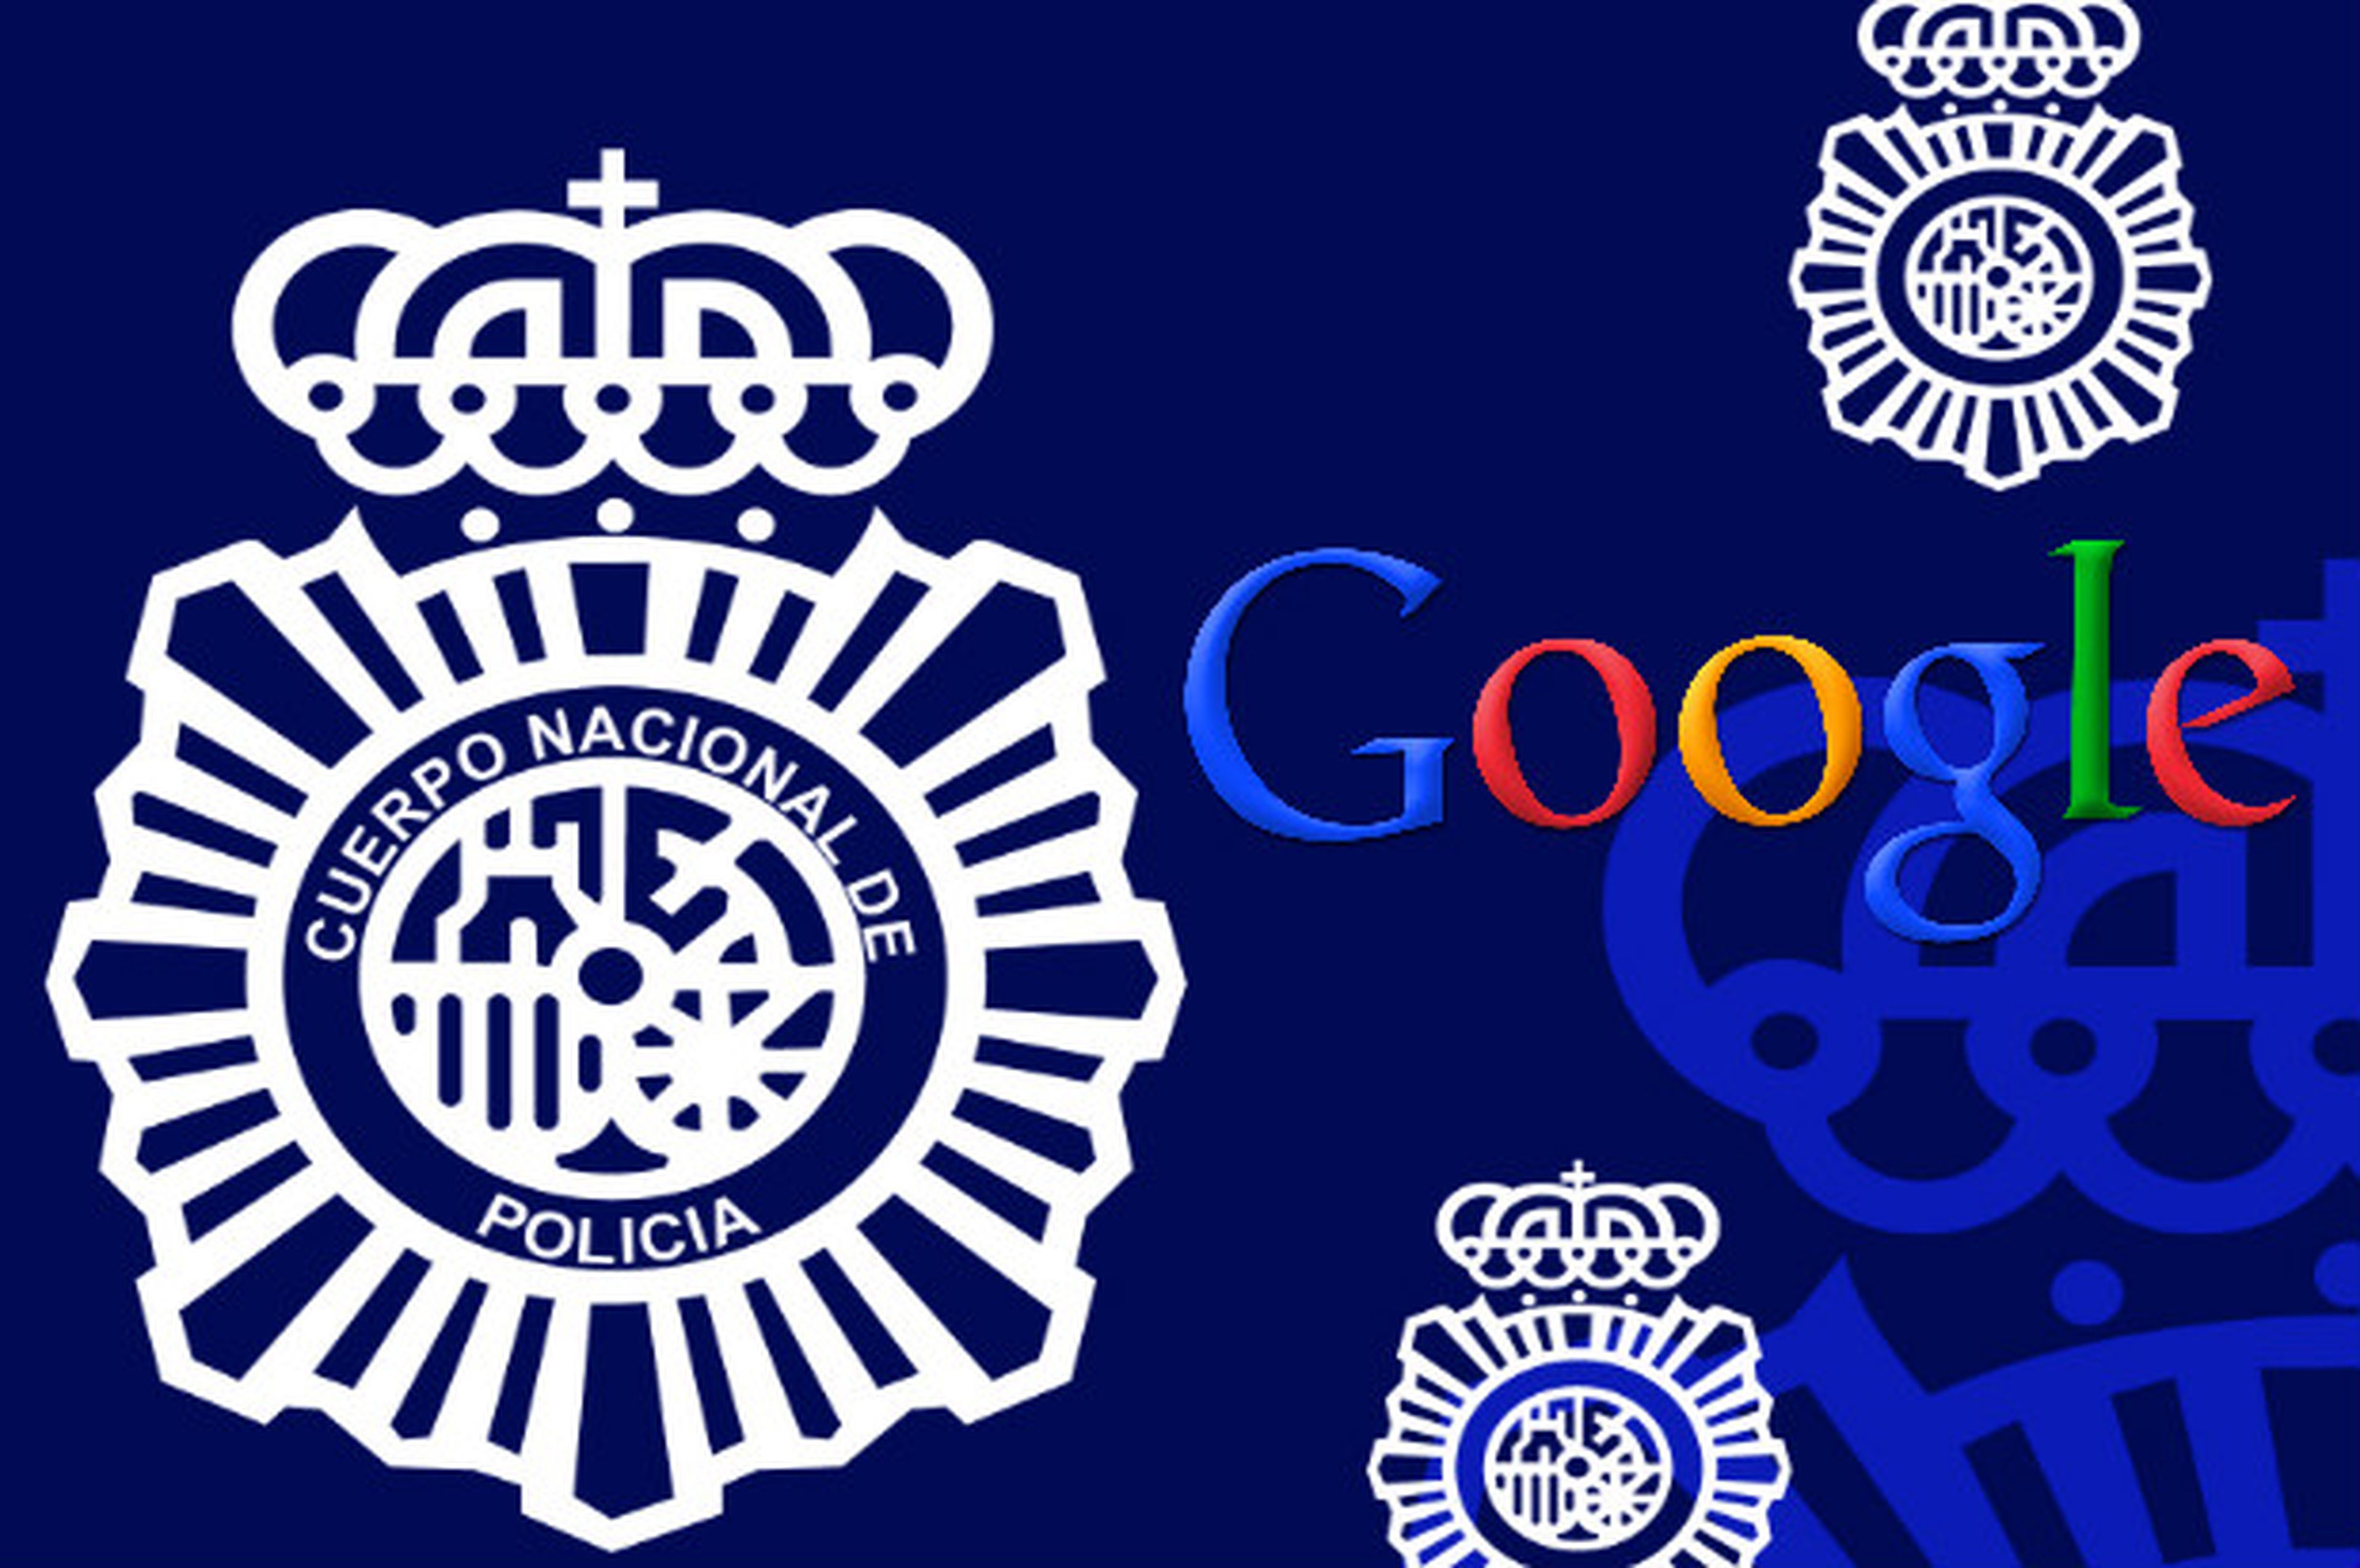 Policía Nacional y Google, juntos para proteger a los niños